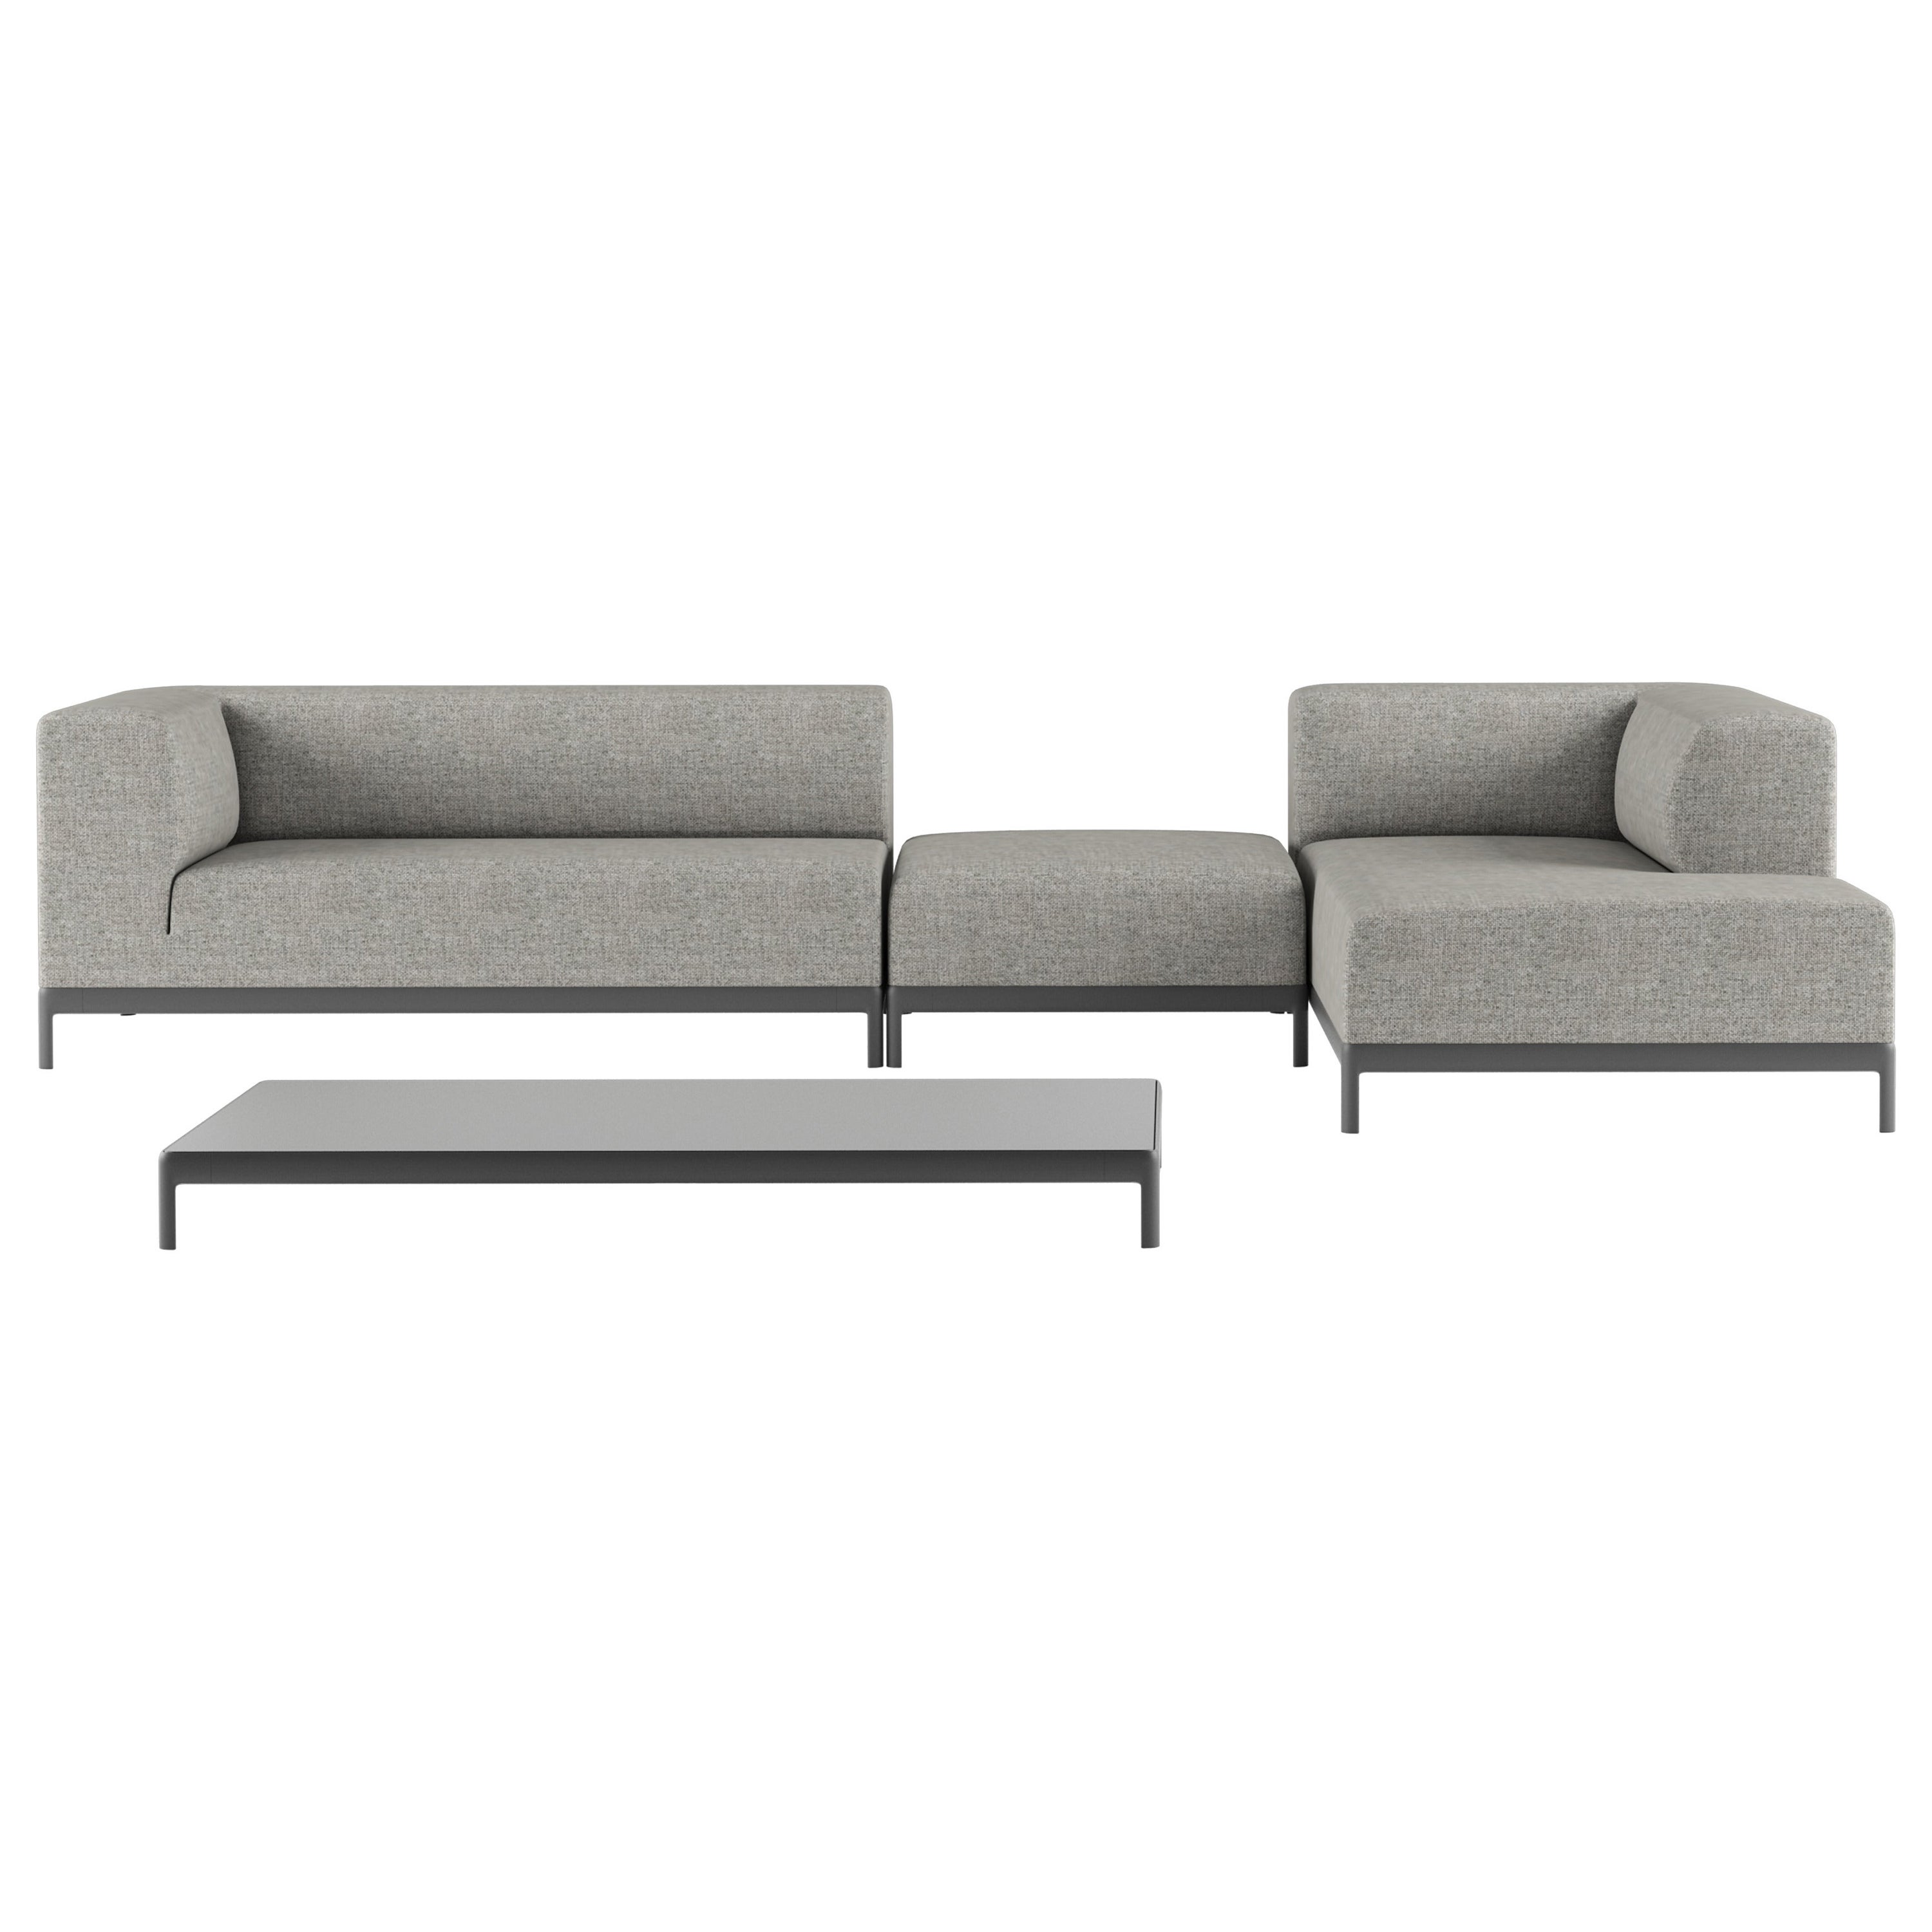 Alias P63+P70+P65+P73 AluZen Soft Sofa Set in Upholstery with Aluminium Frame